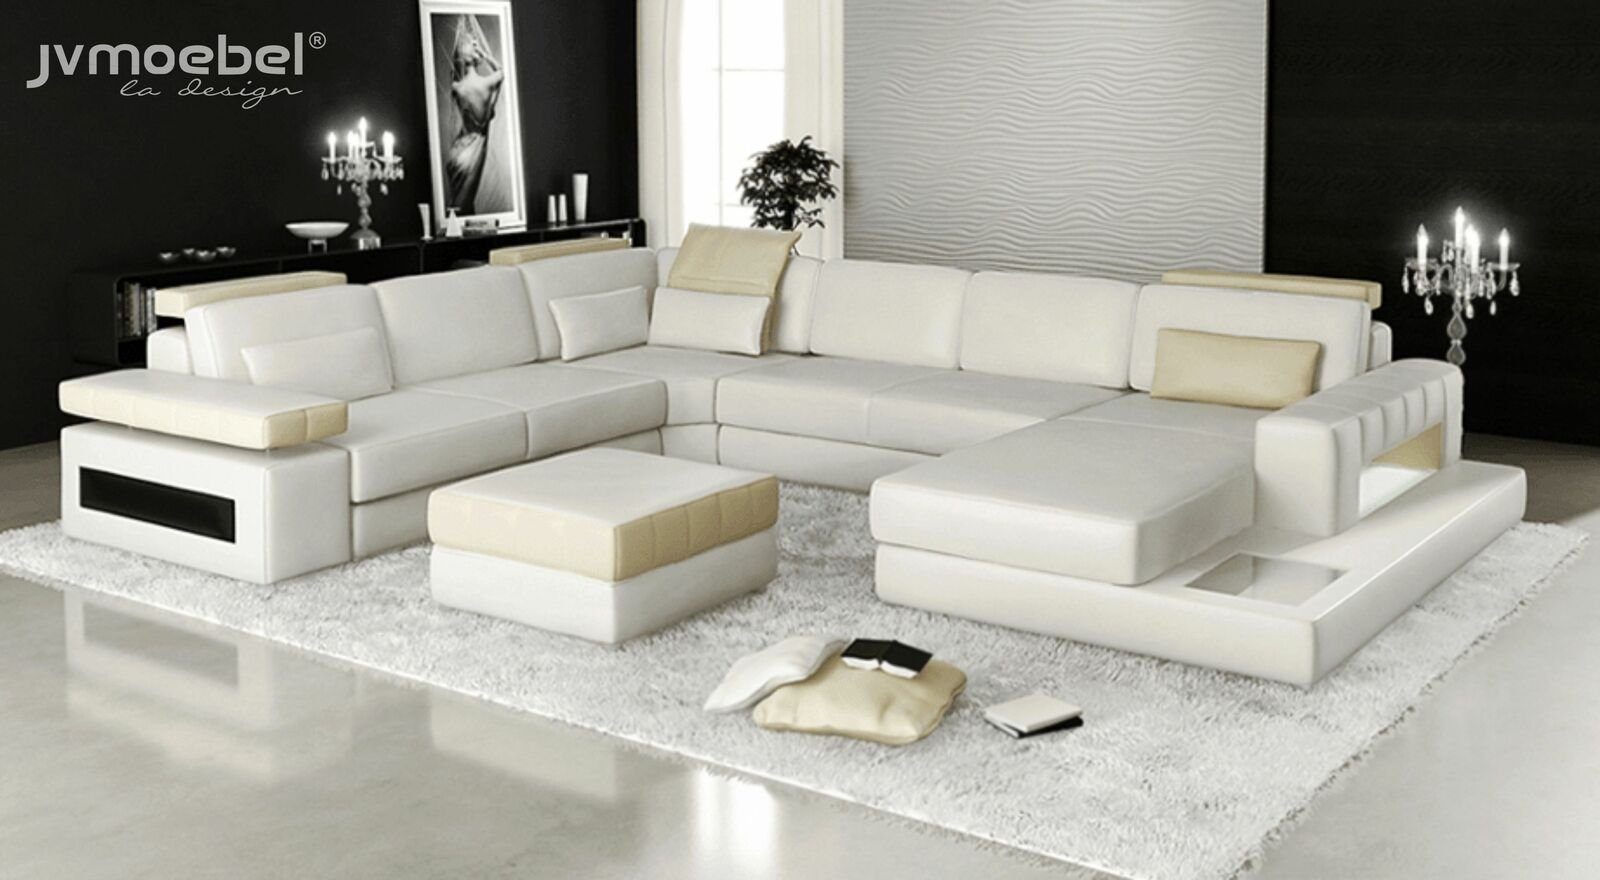 JVmoebel Ecksofa Big U Form Ecksofa Sofa Couch Polster Leder Textil Stoff, Made in Europe